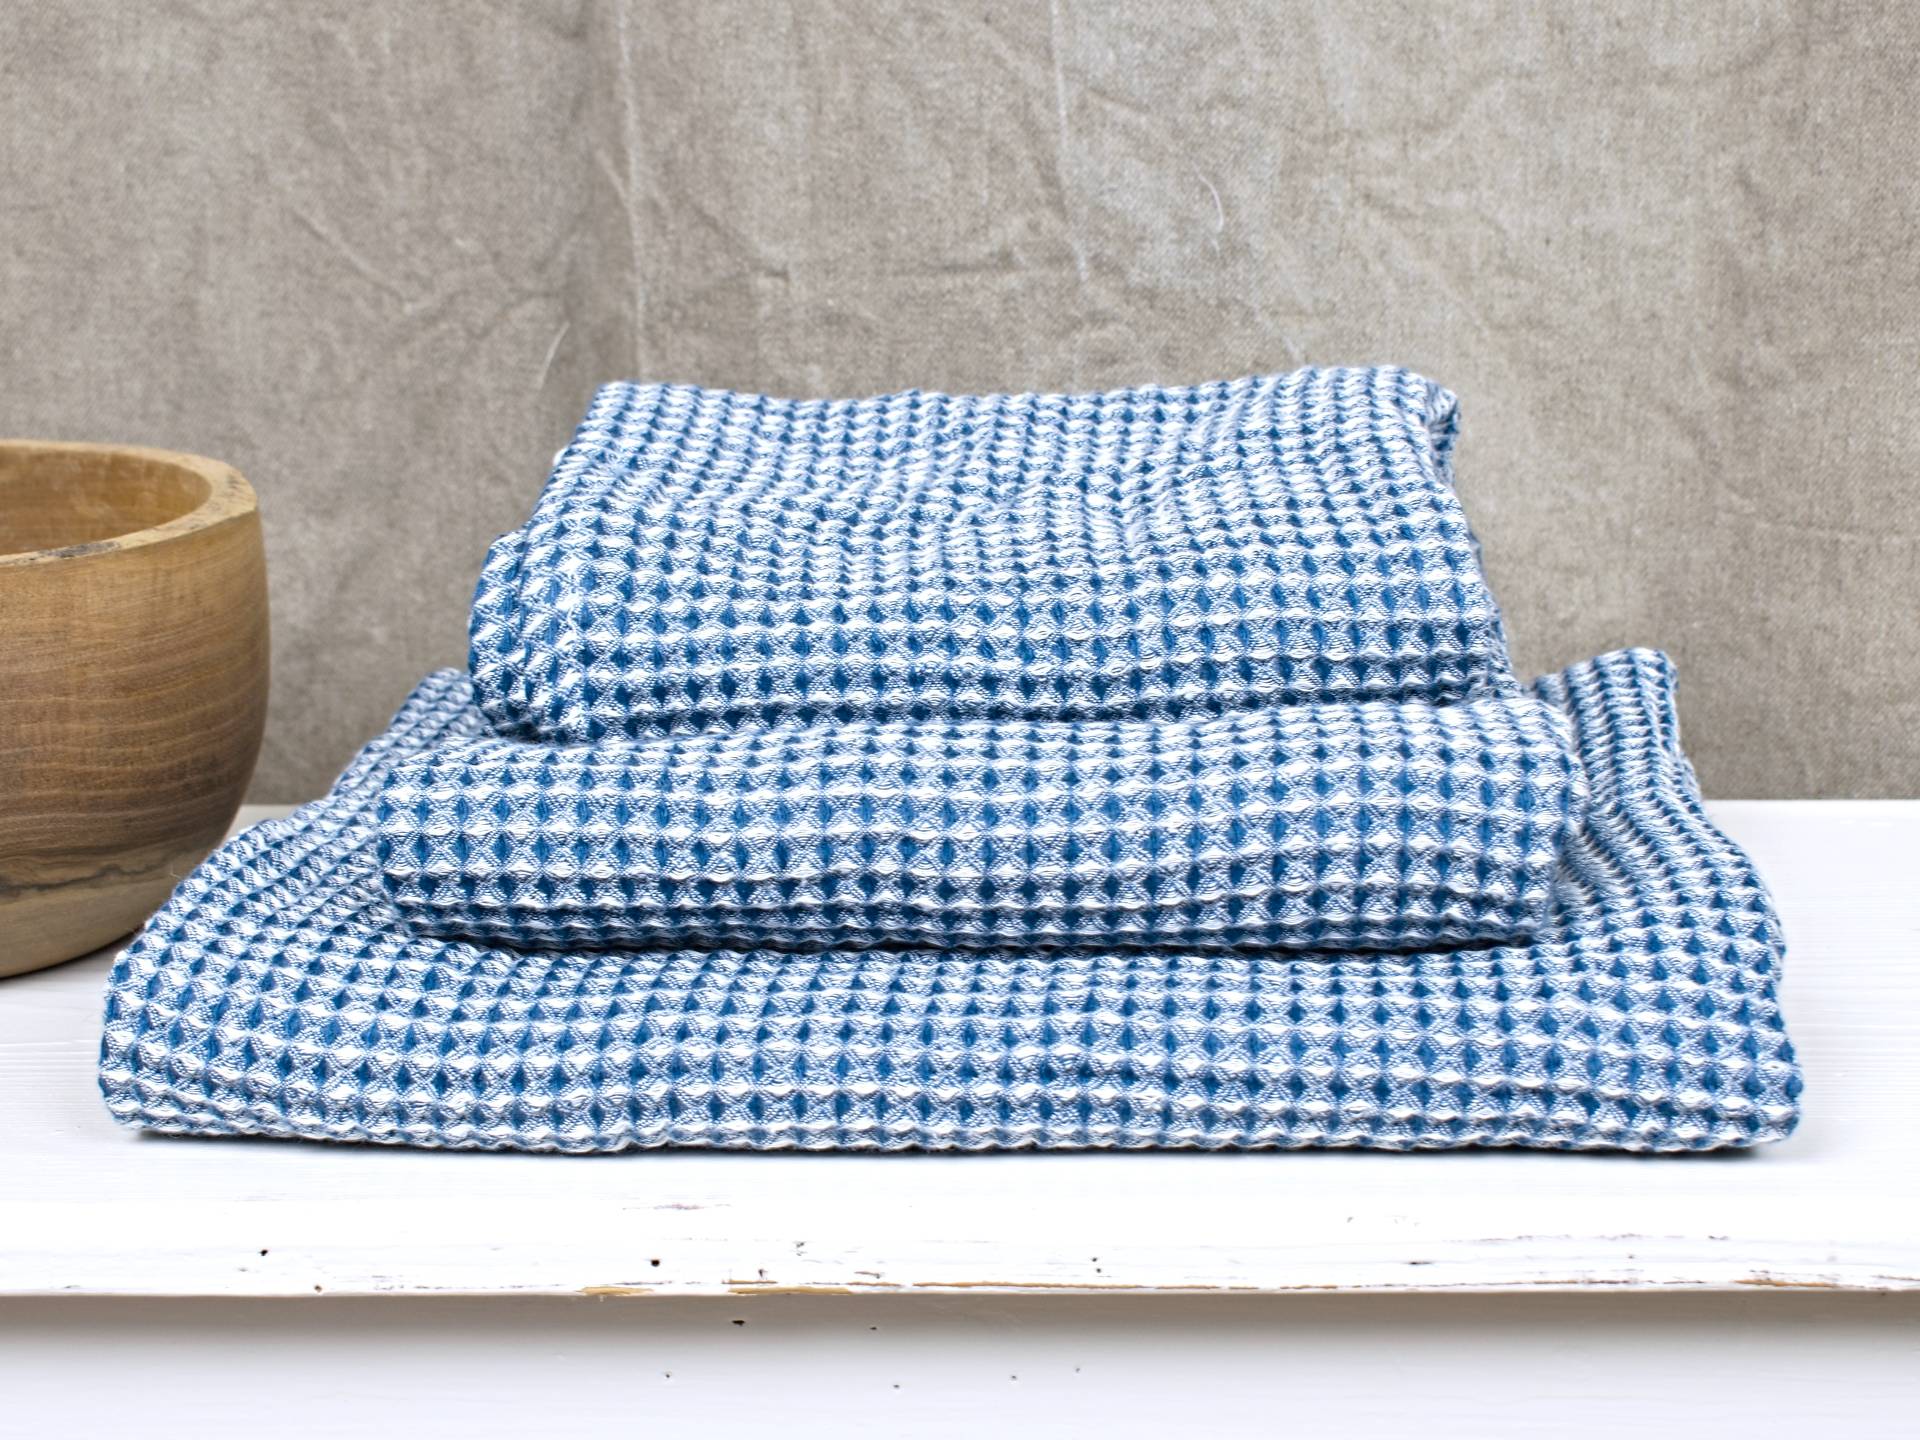 Lněný ručník vaflový modrý 35 x 50 cm